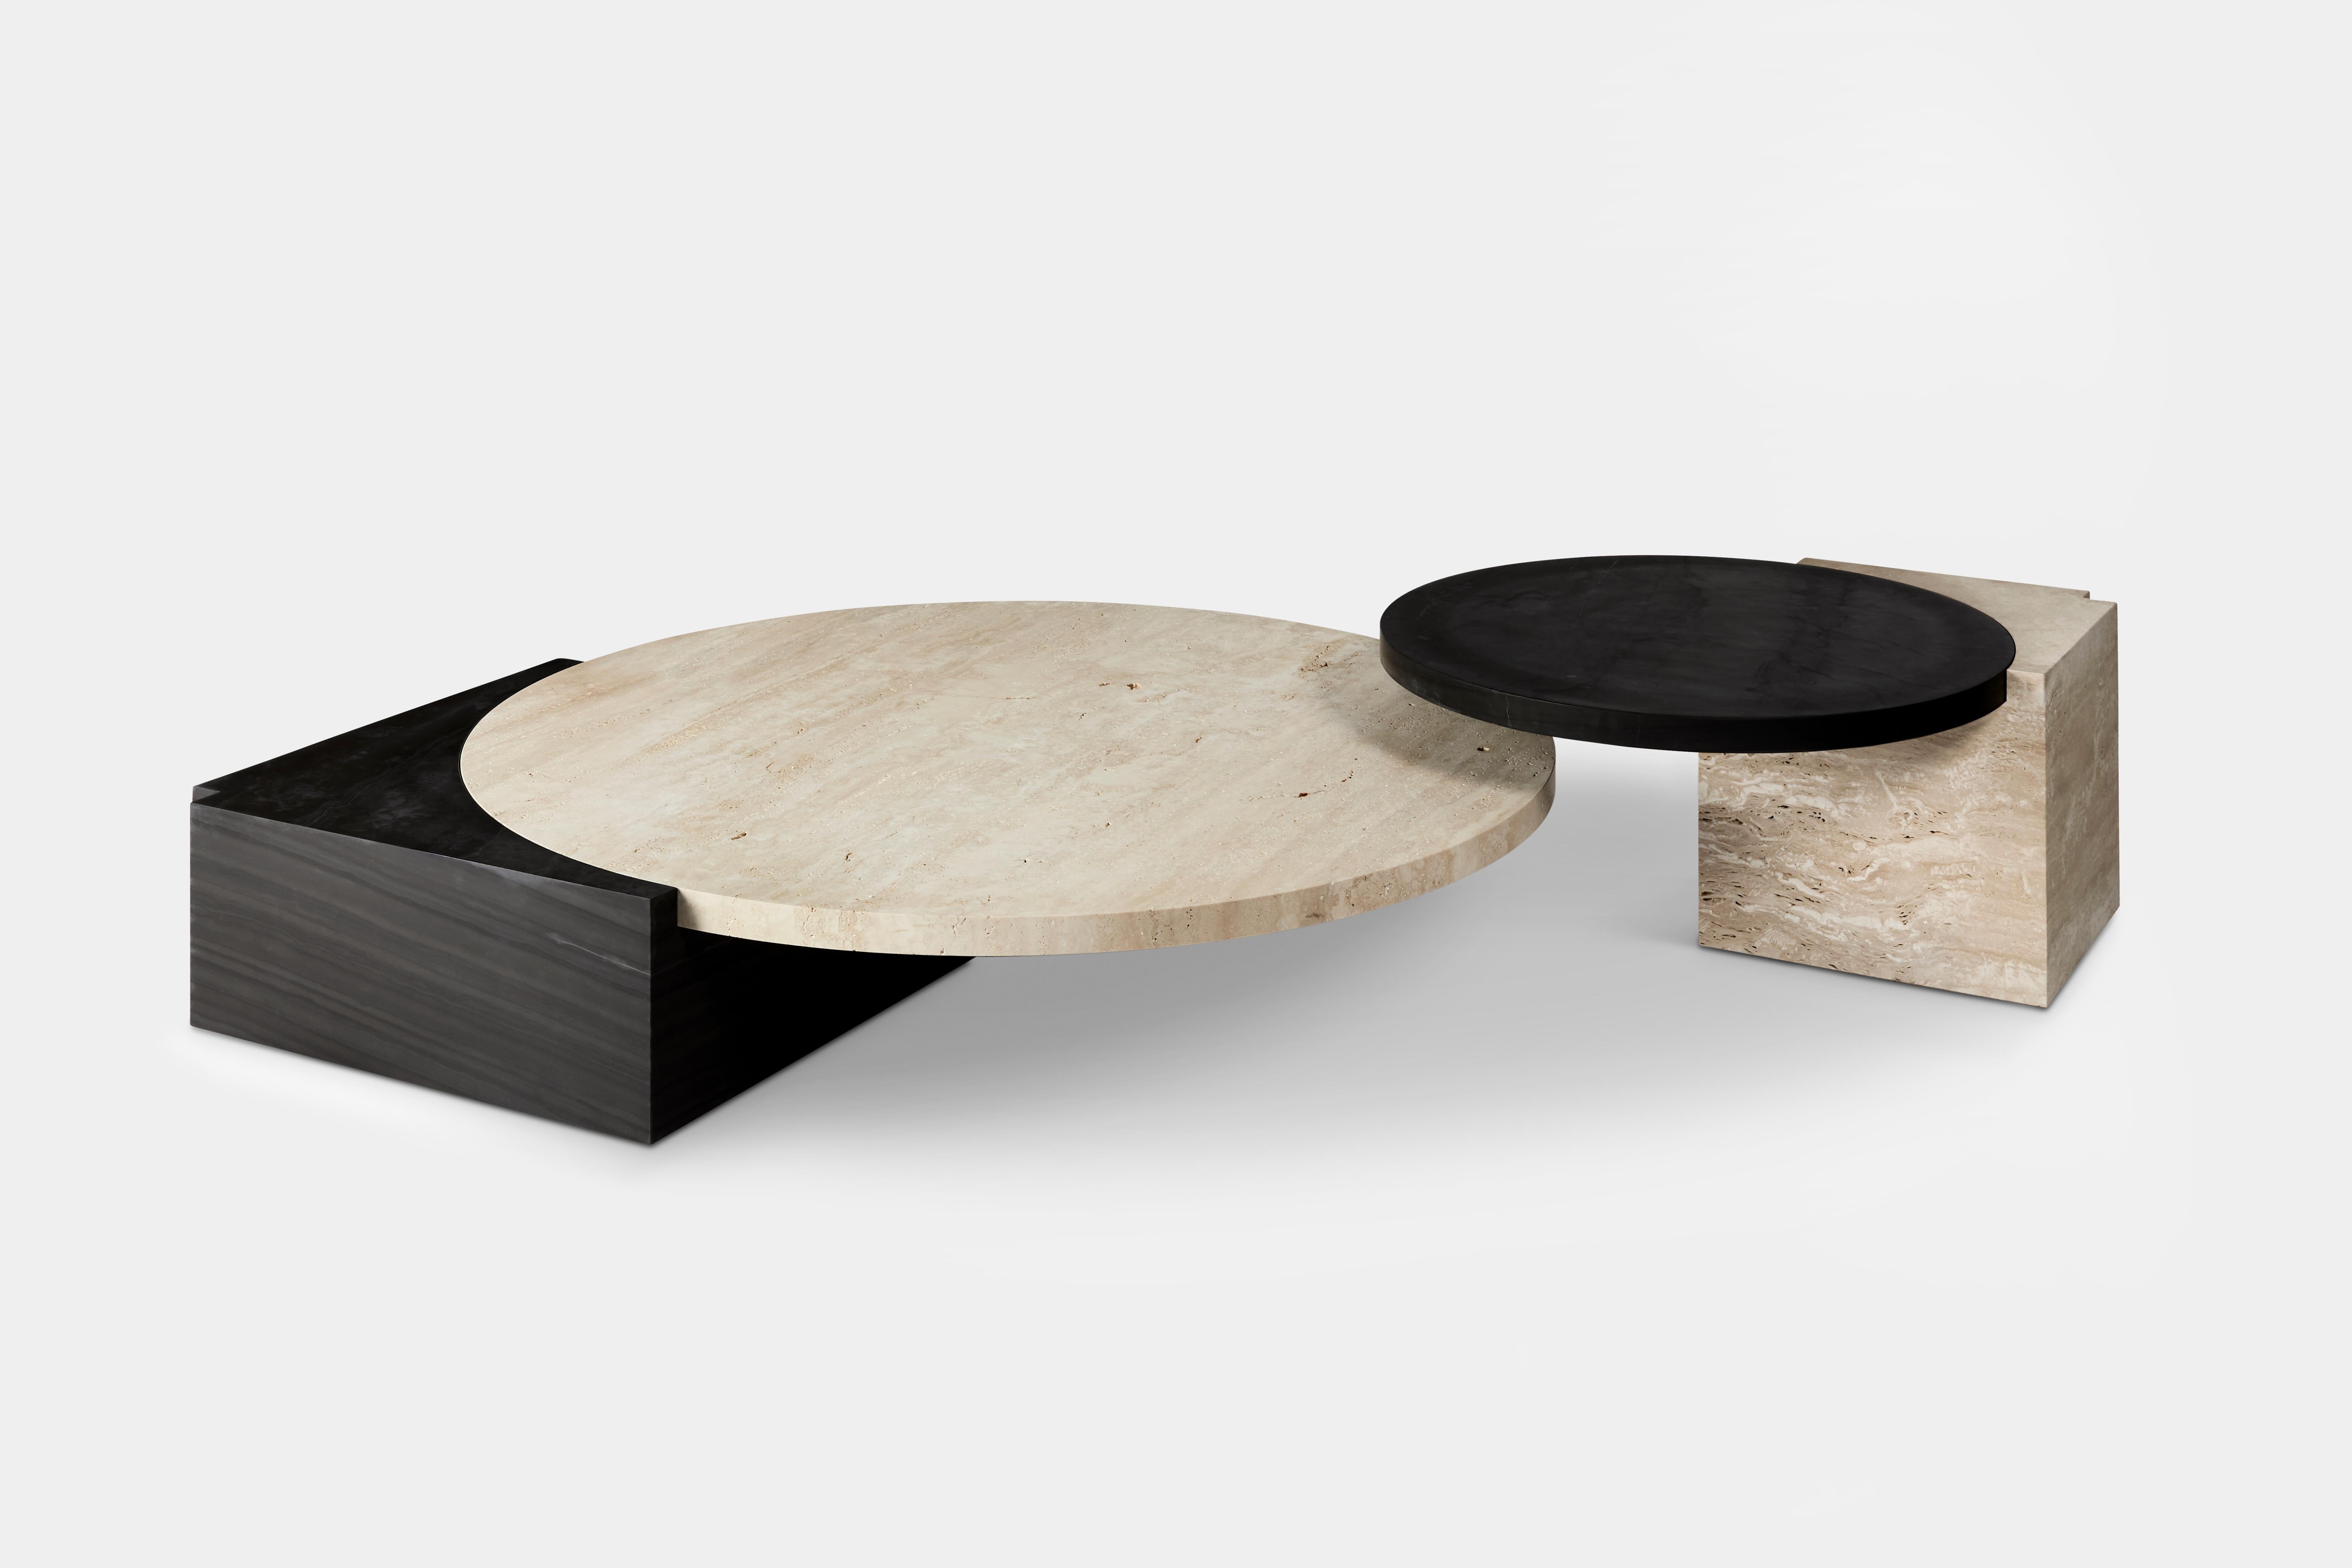 Die Tribeca Tables sind eine Serie von skulpturalen Beistell- und Couchtischen, die das gleiche schwebende Konzept wie das Sofa widerspiegeln und der Schwerkraft zu trotzen scheinen. 

Die glatte, runde Tischplatte aus schwarzem Seidenmarmor und